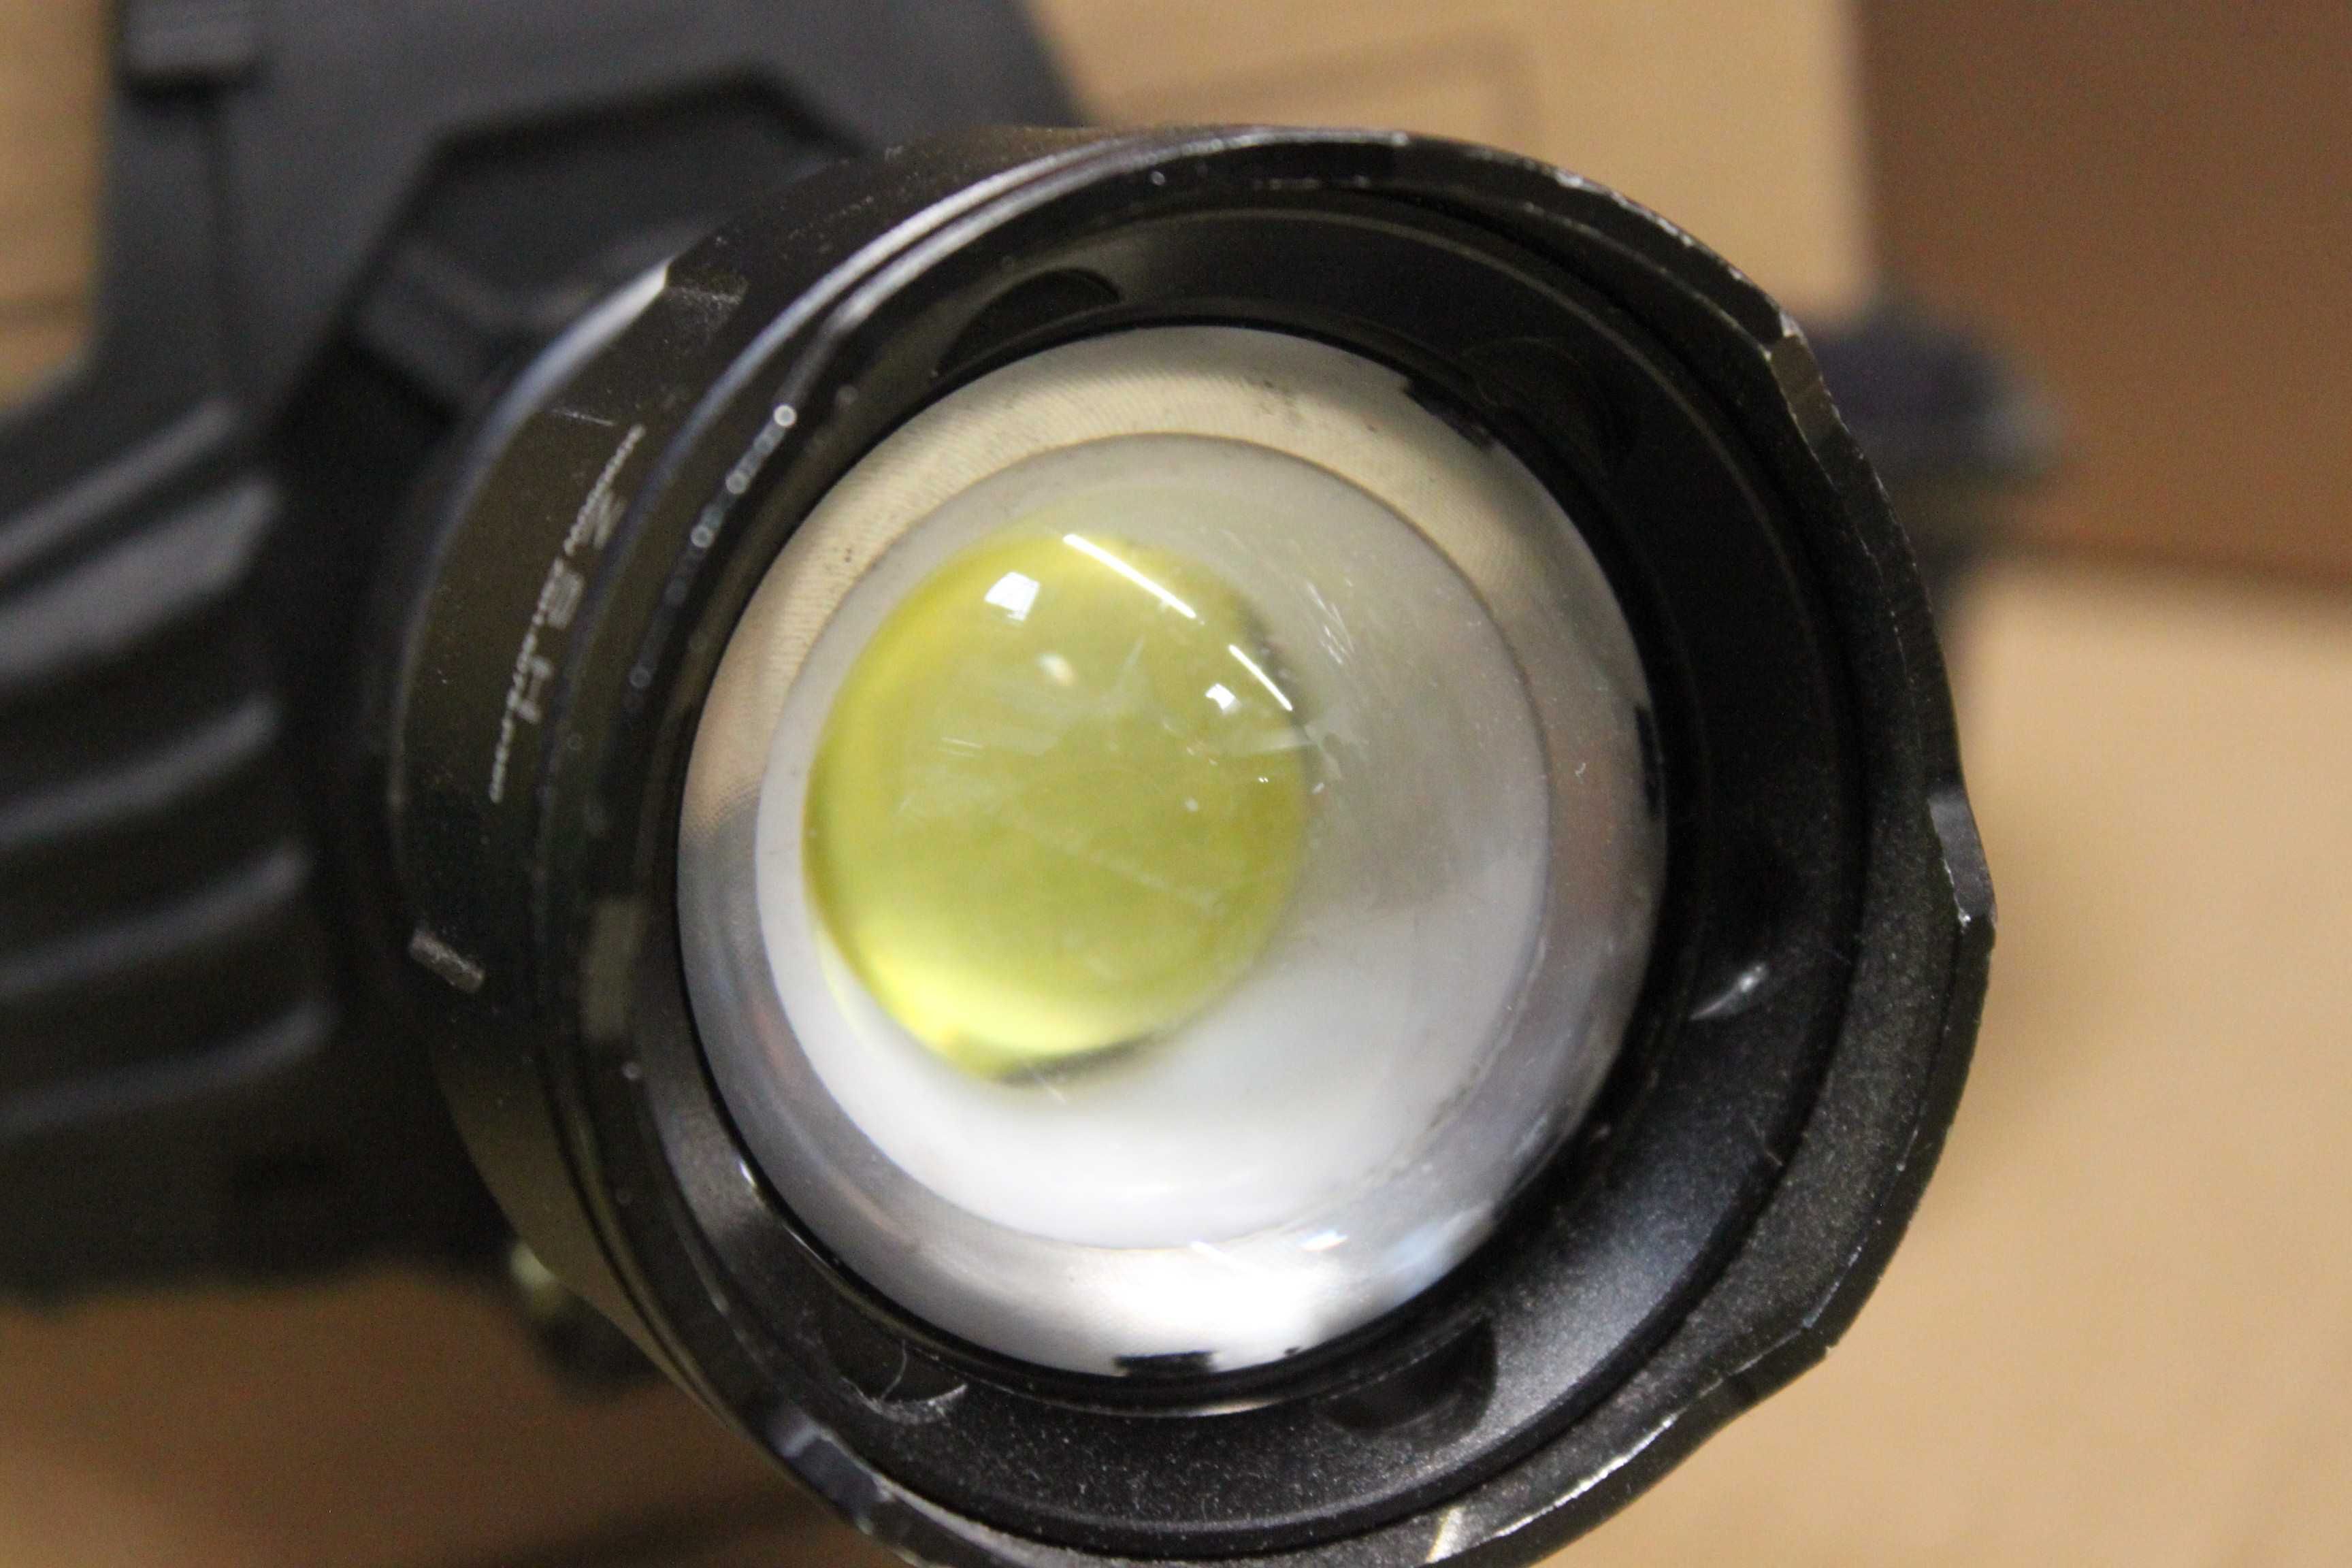 Lanterna frontala LED ZOOM 3FAZE 3X18650 P360